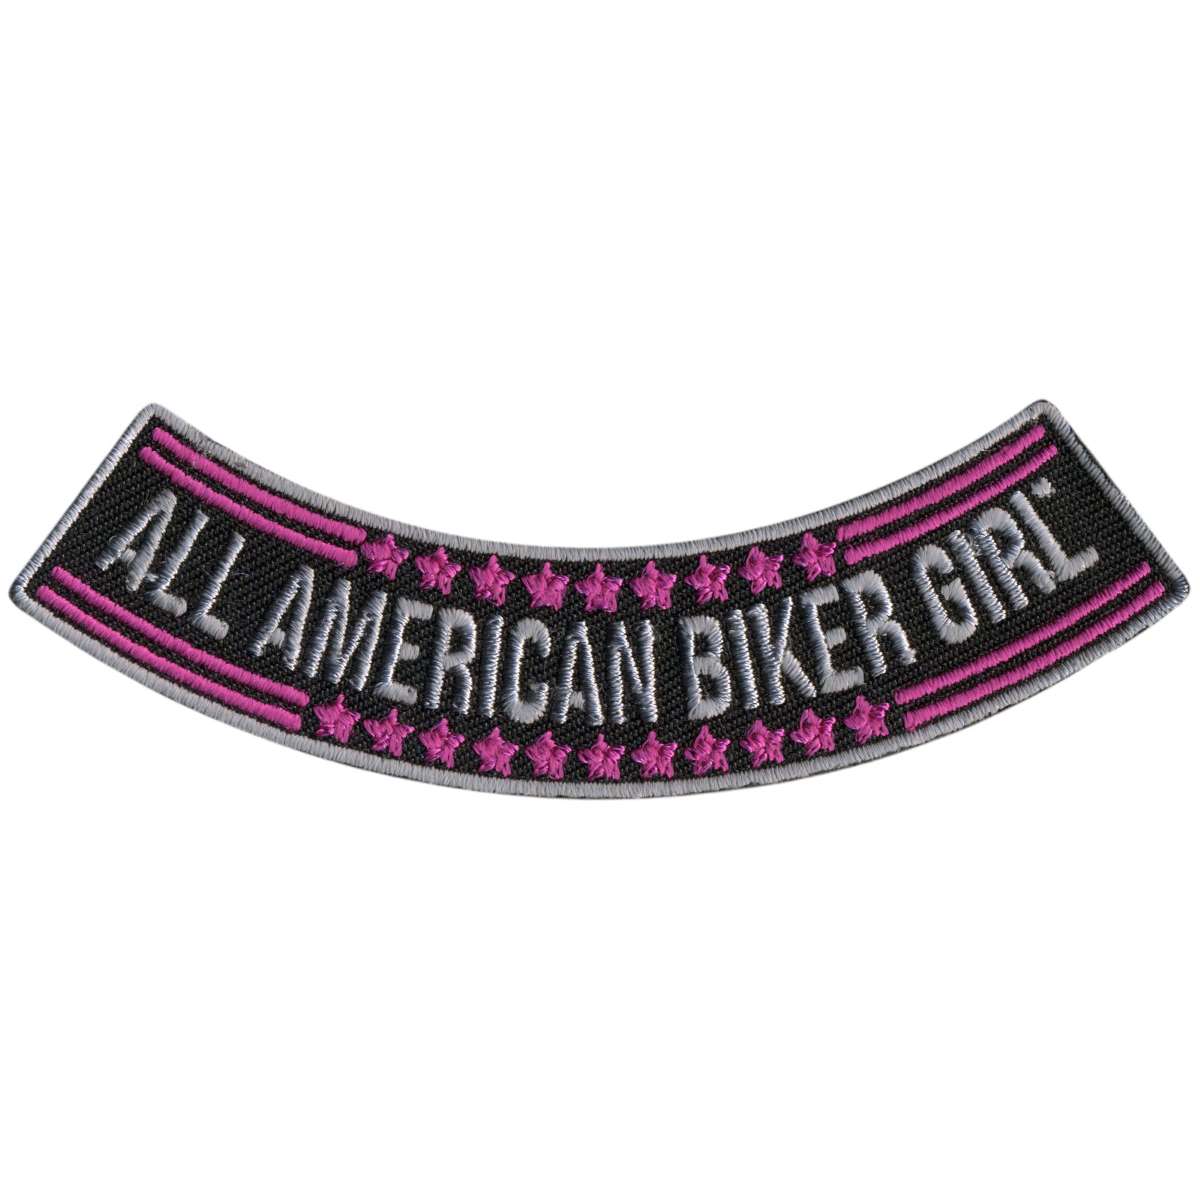 Hot Leathers All American Biker Girl 4” X 1” Bottom Rocker Patch PPM5104